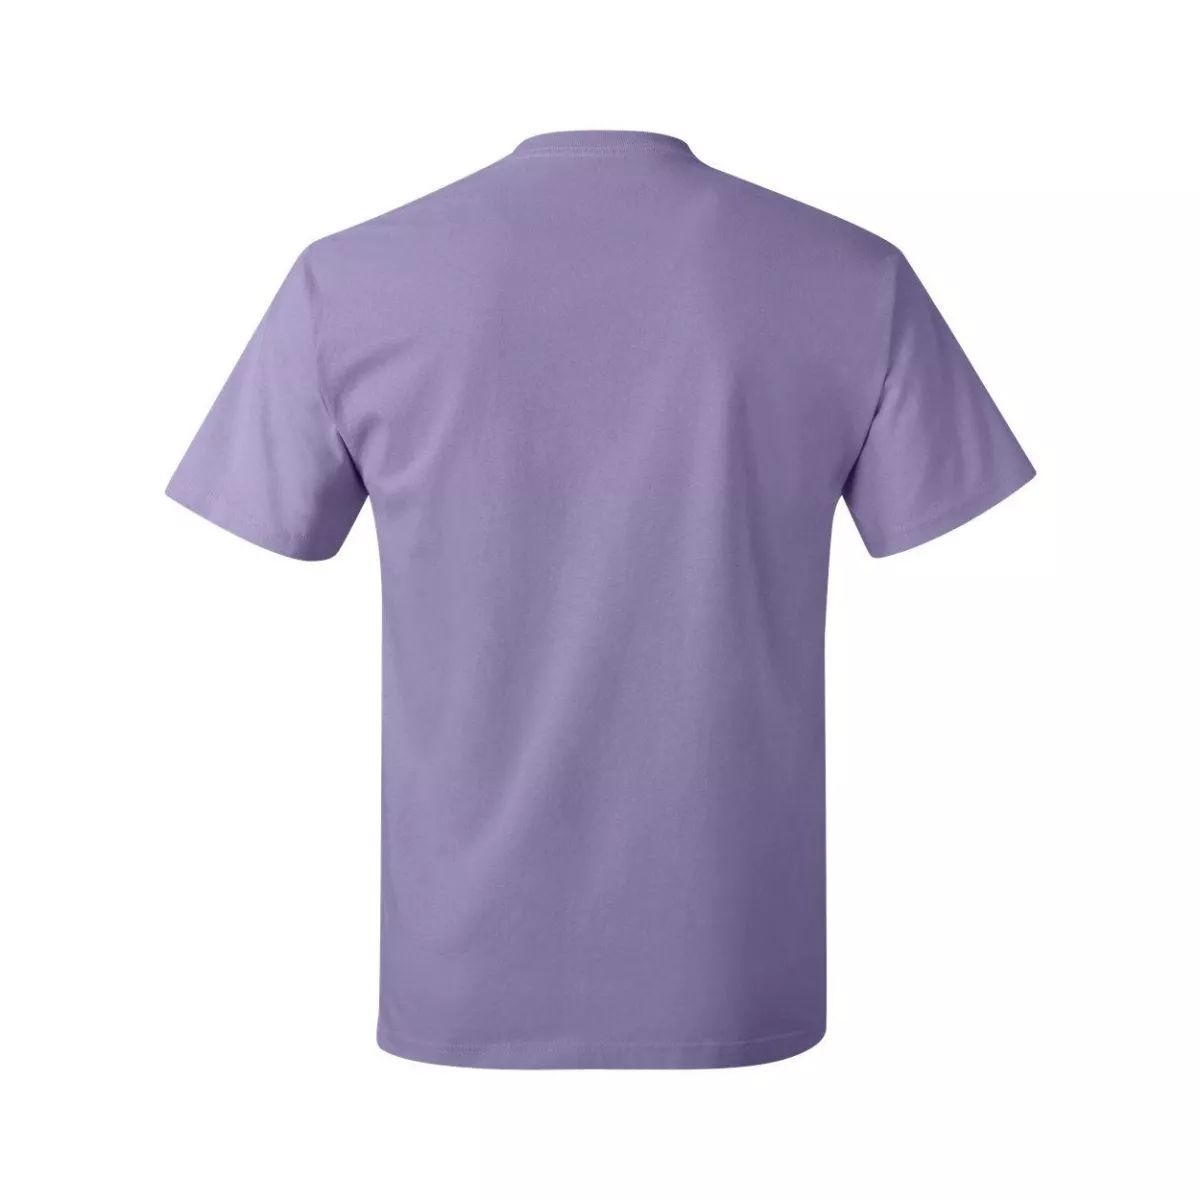 Аутентичная футболка Floso, розовый